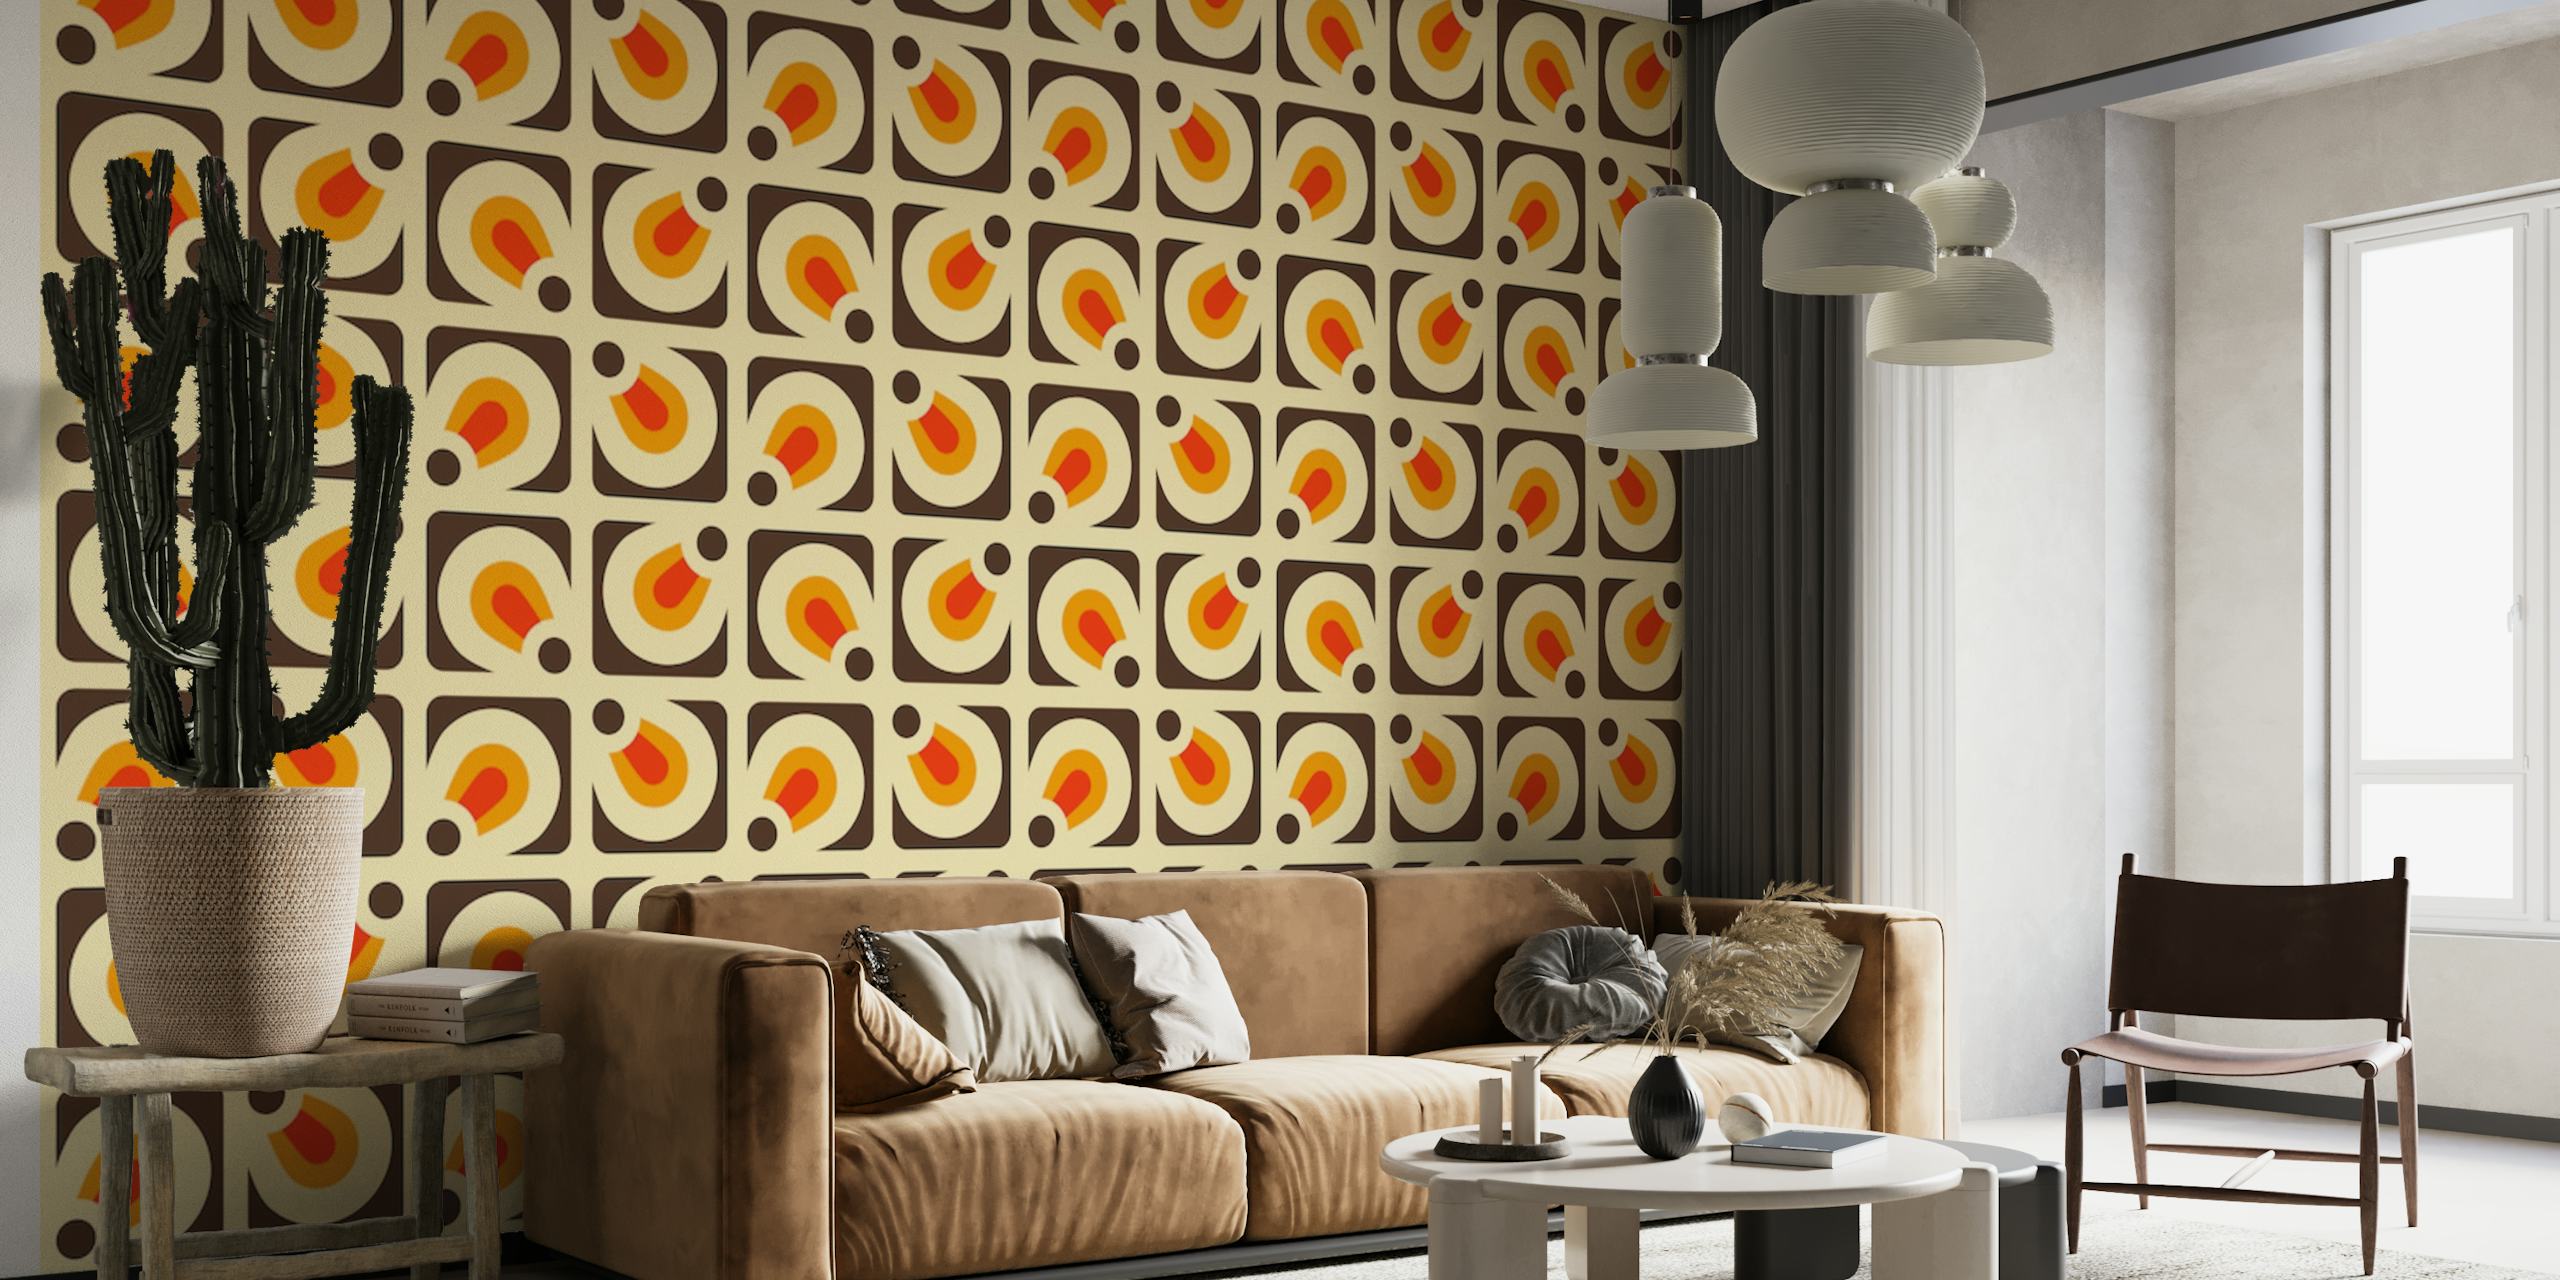 Mural de parede inspirado no vintage '2146 Retro Pattern' com formas geométricas laranja e brancas